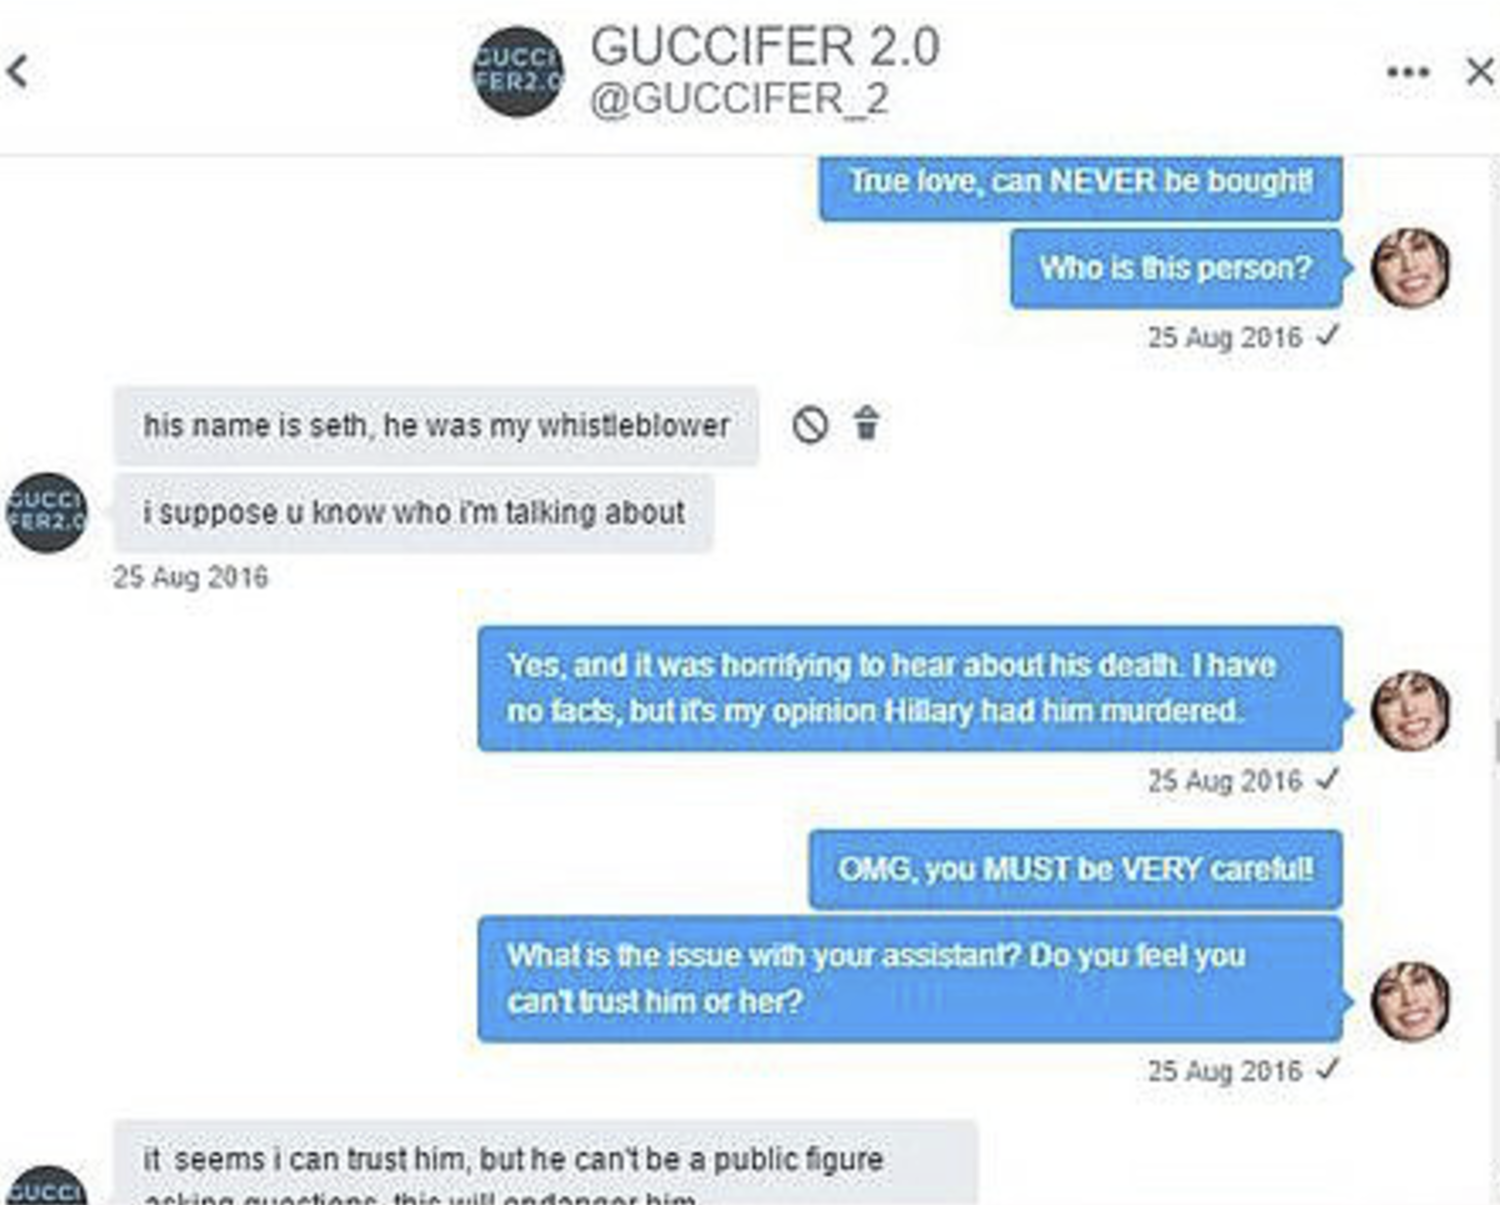 guccifer-seth-rich-wikileaks